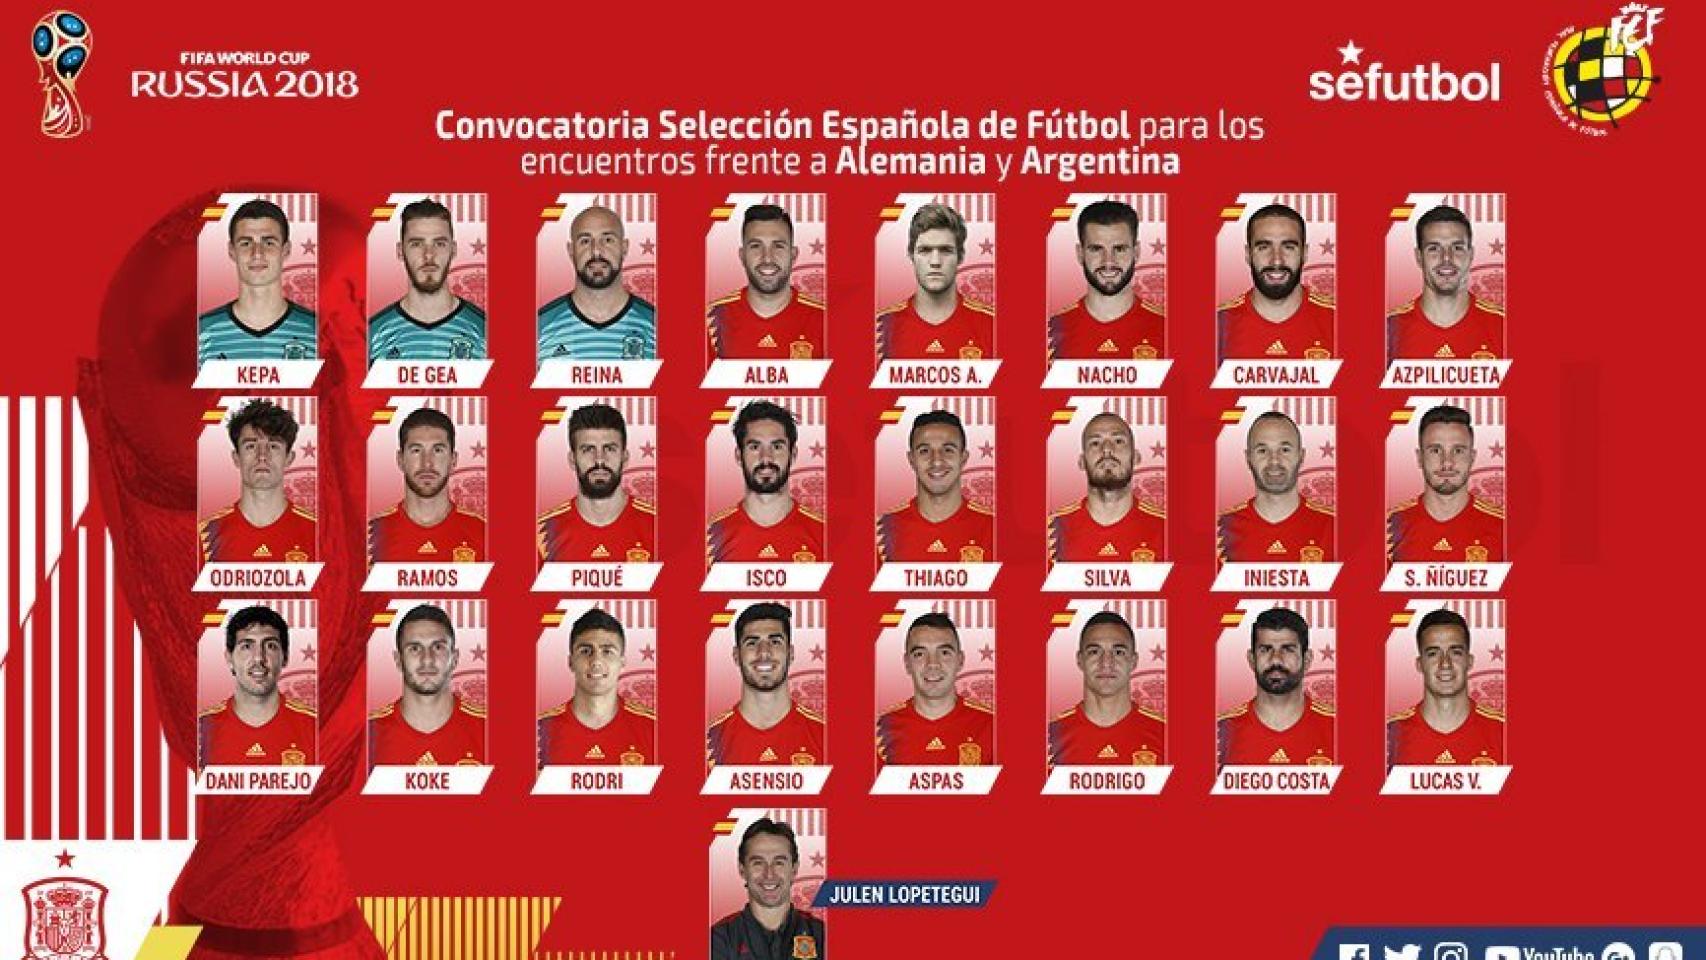 Quién llevará 7 de España Alemania y Argentina?